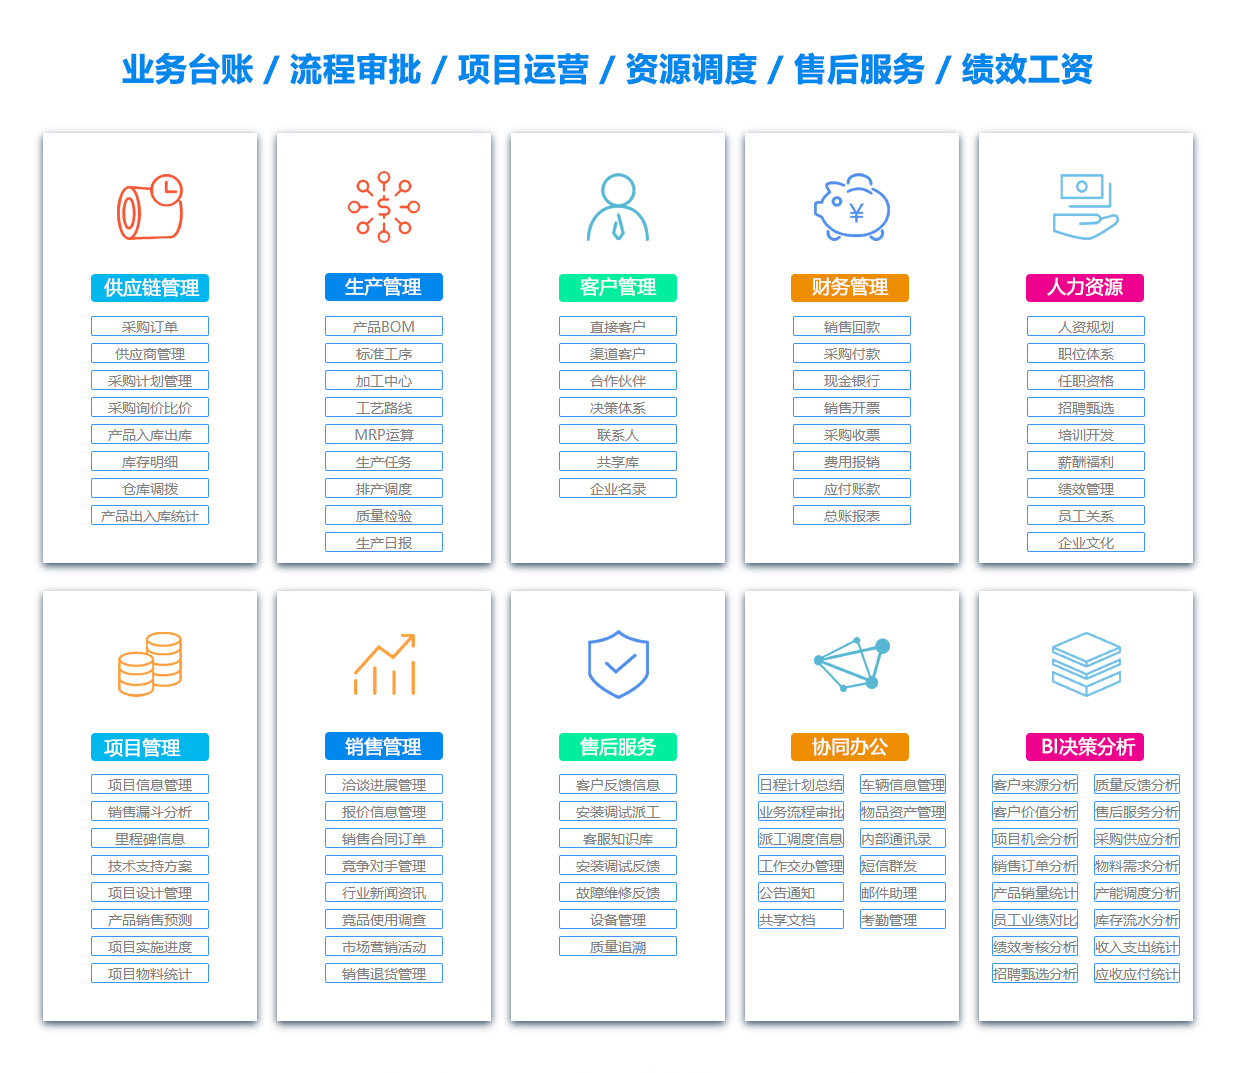 广州客户资料管理系统